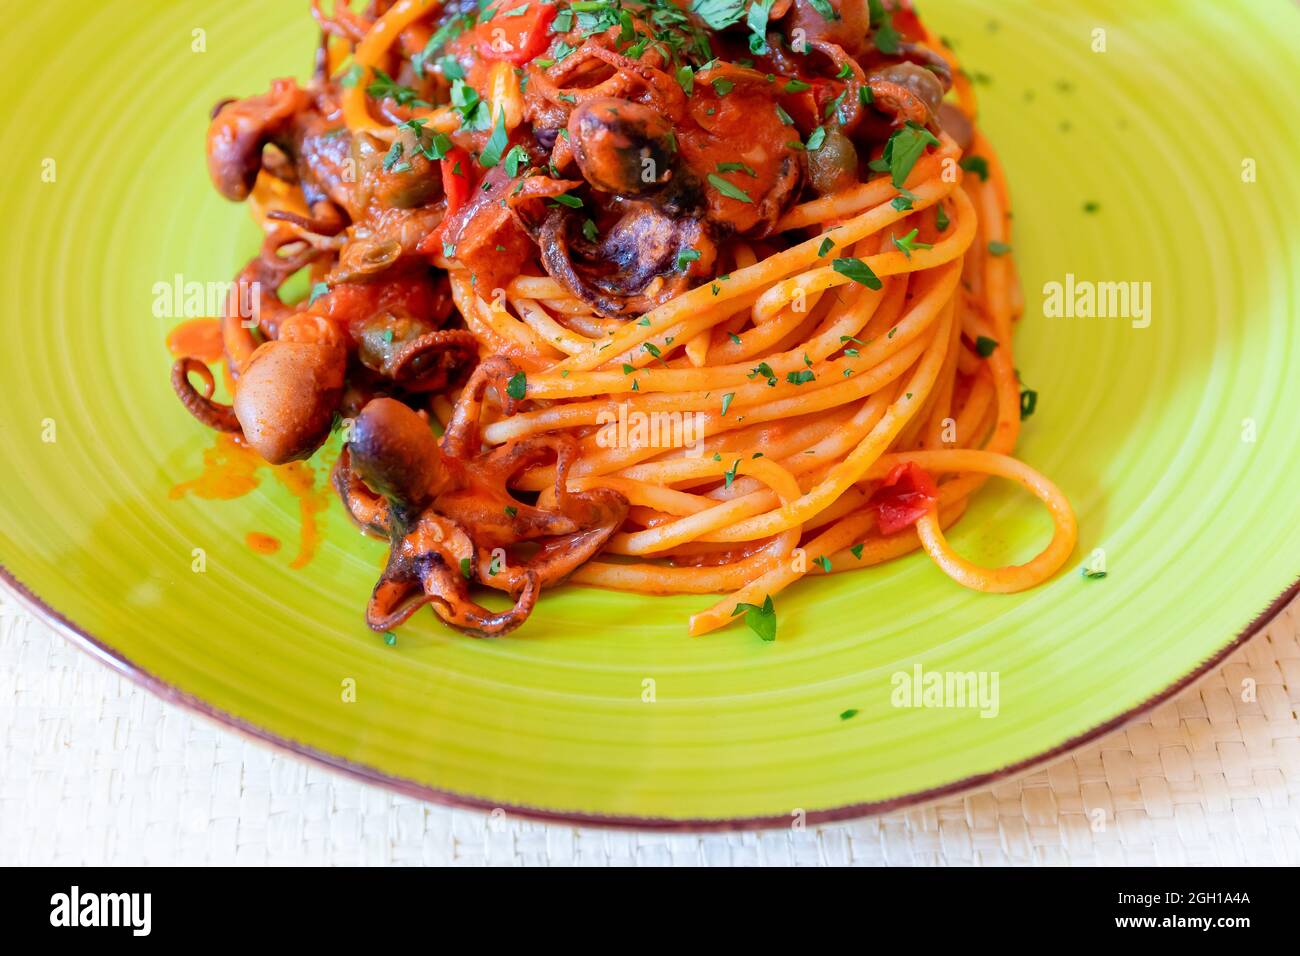 Spaghetti al polpo, salsa di pomodoro, olive e capperi. Ricetta tipica della cucina napoletana, in Italia. Pronto a mangiare. Foto Stock